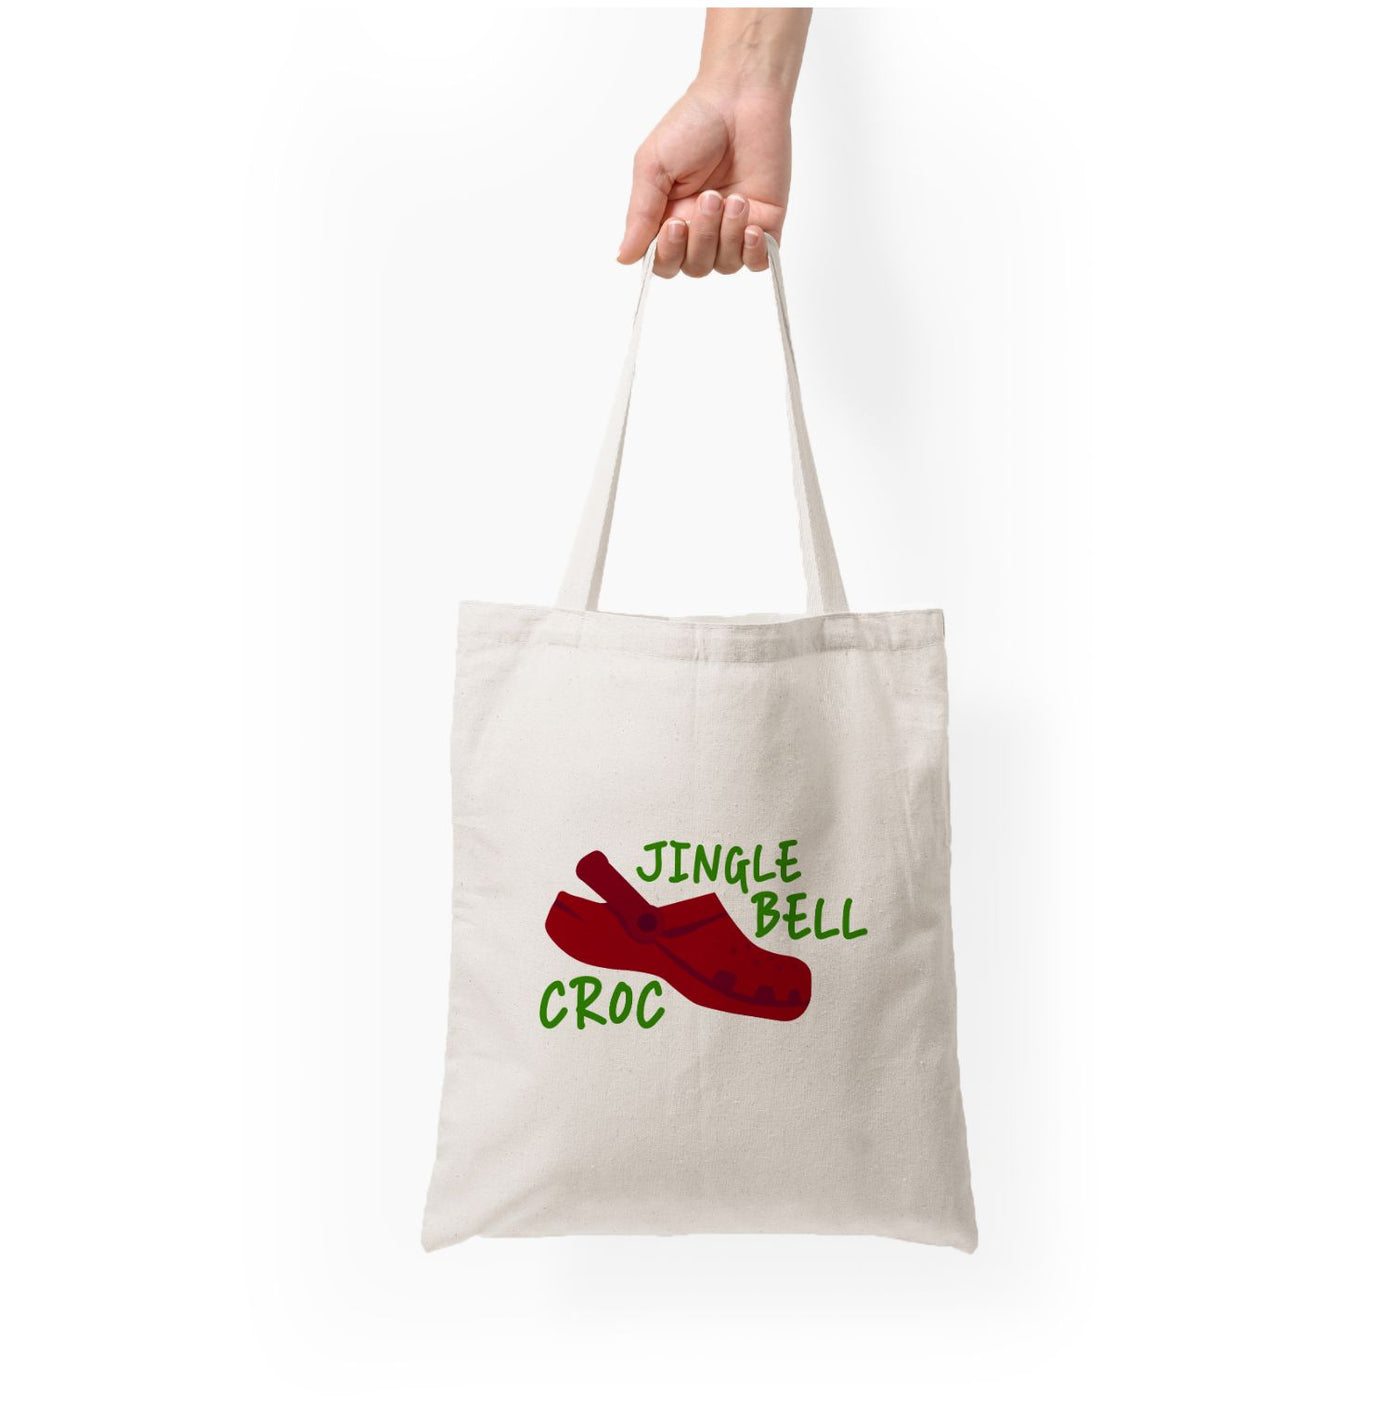 Jingle Bell Croc - Christmas Puns Tote Bag